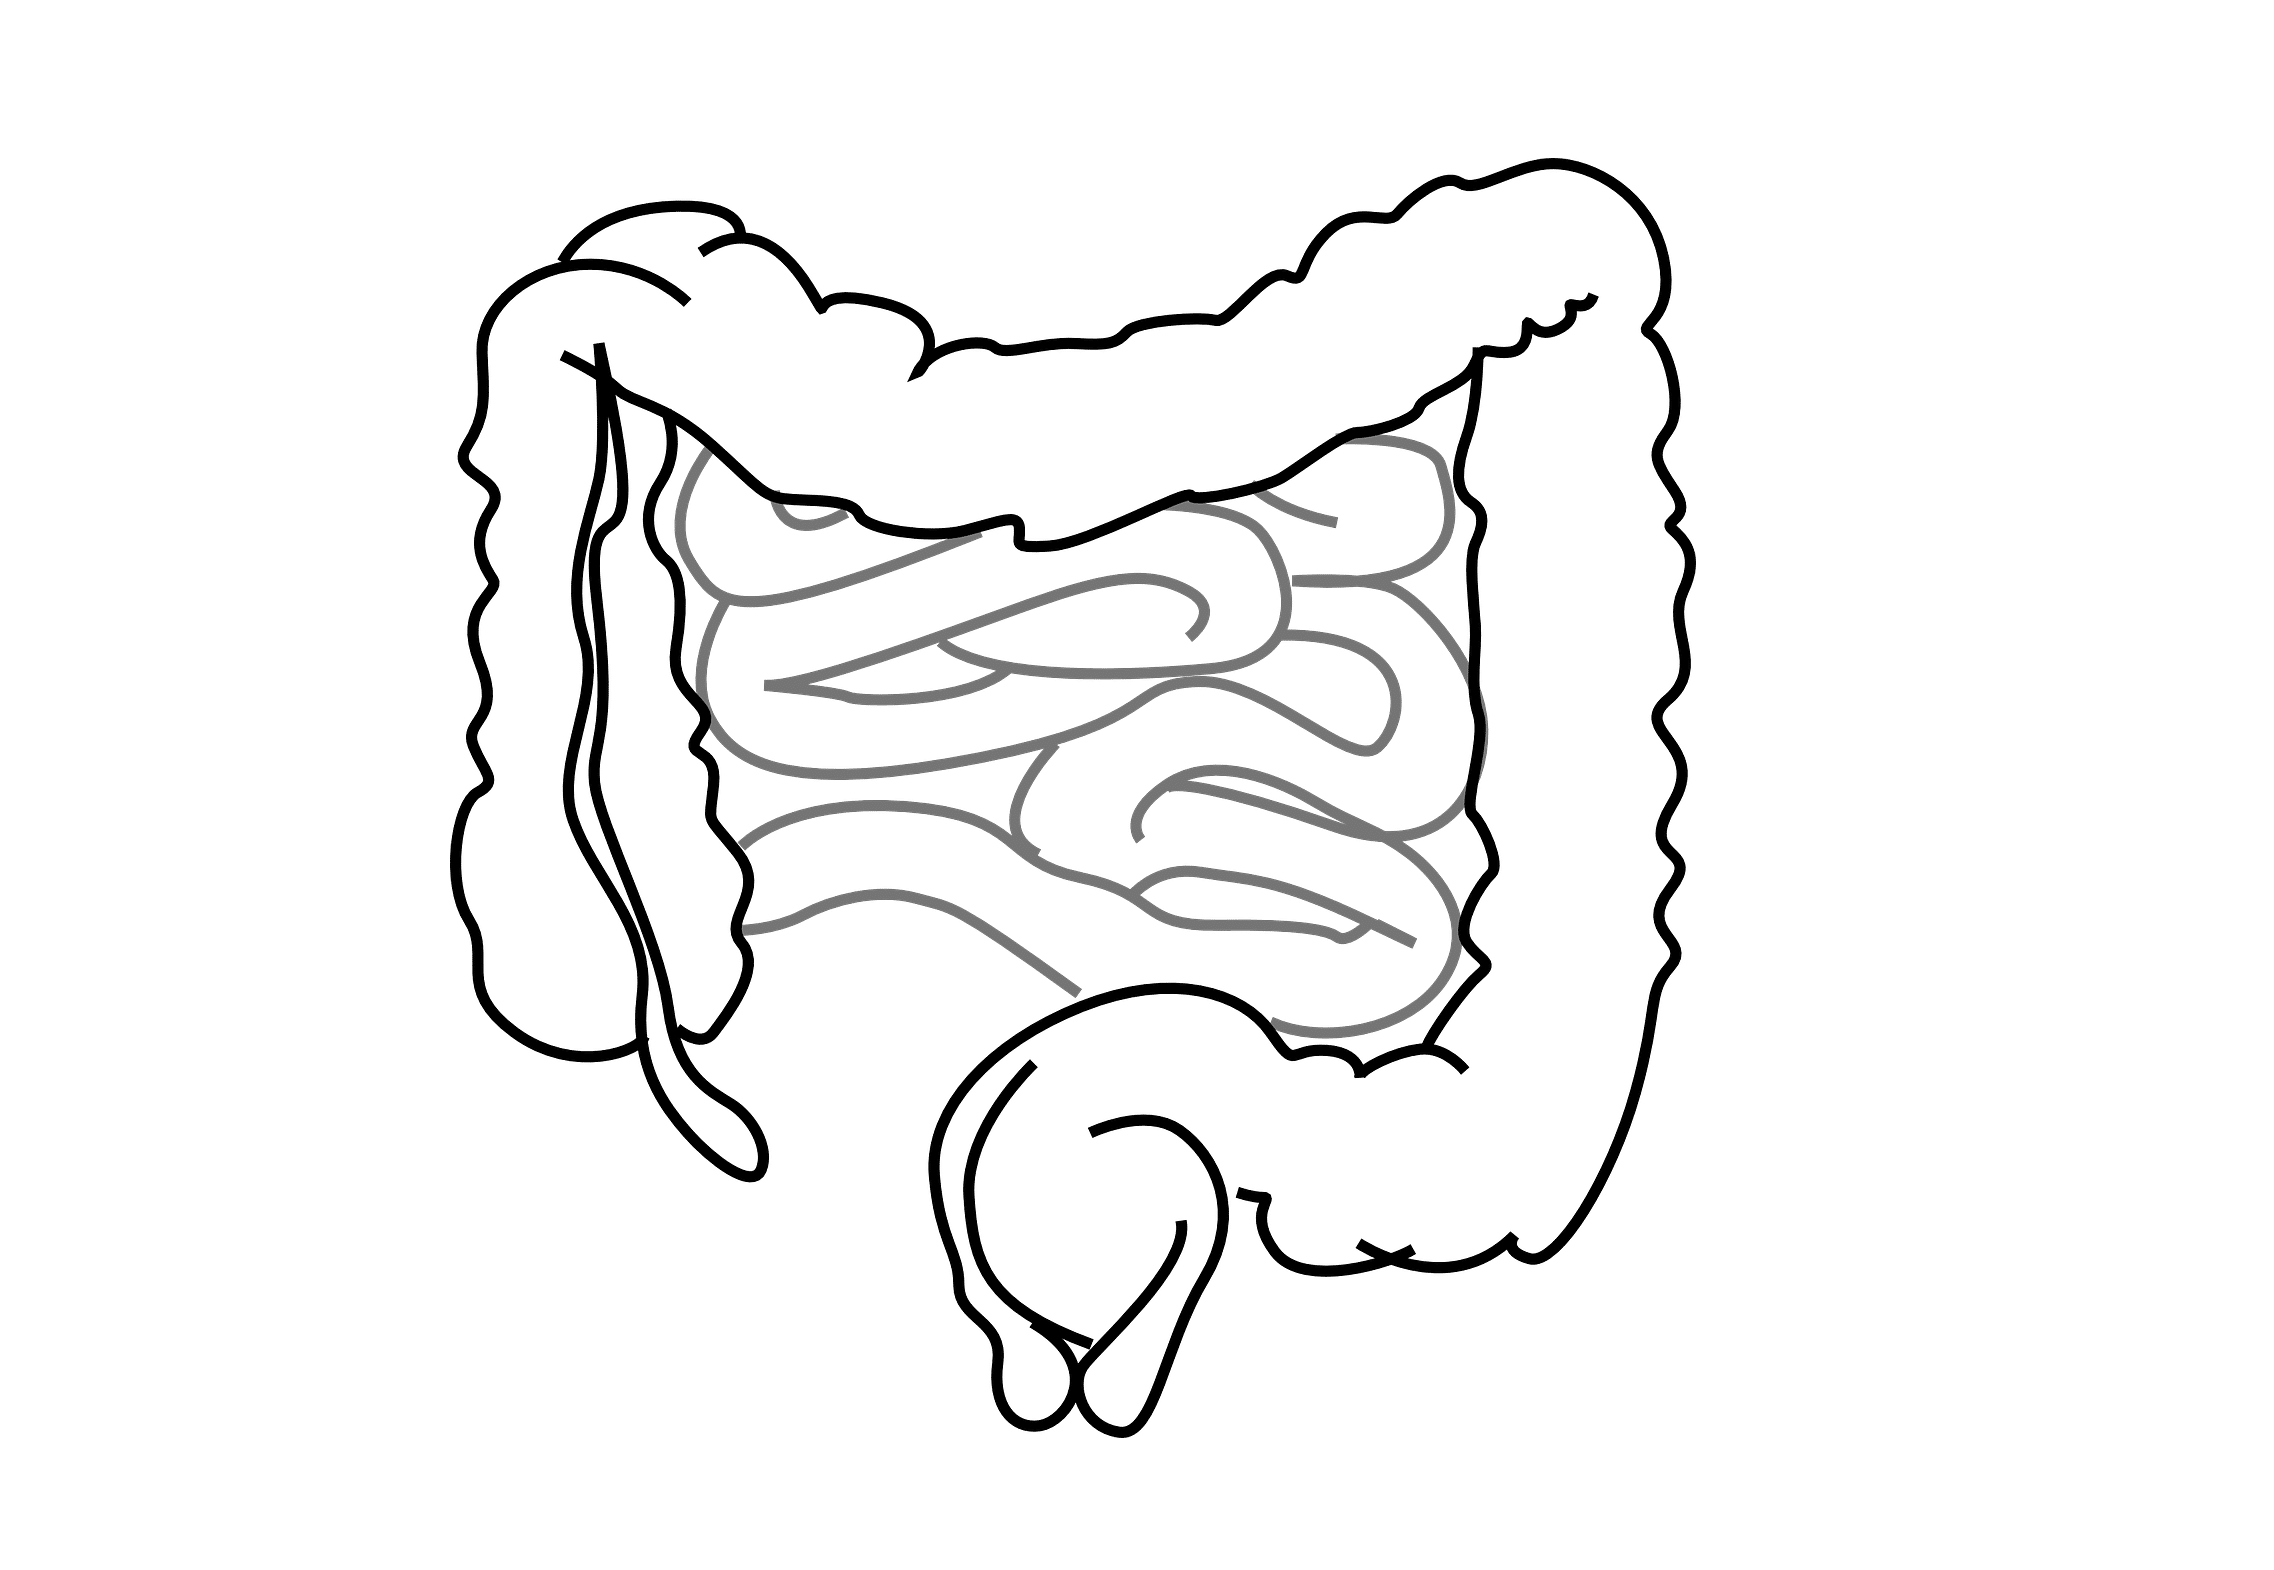 Črevo a mozog #9 Skrátené črevo a apendix